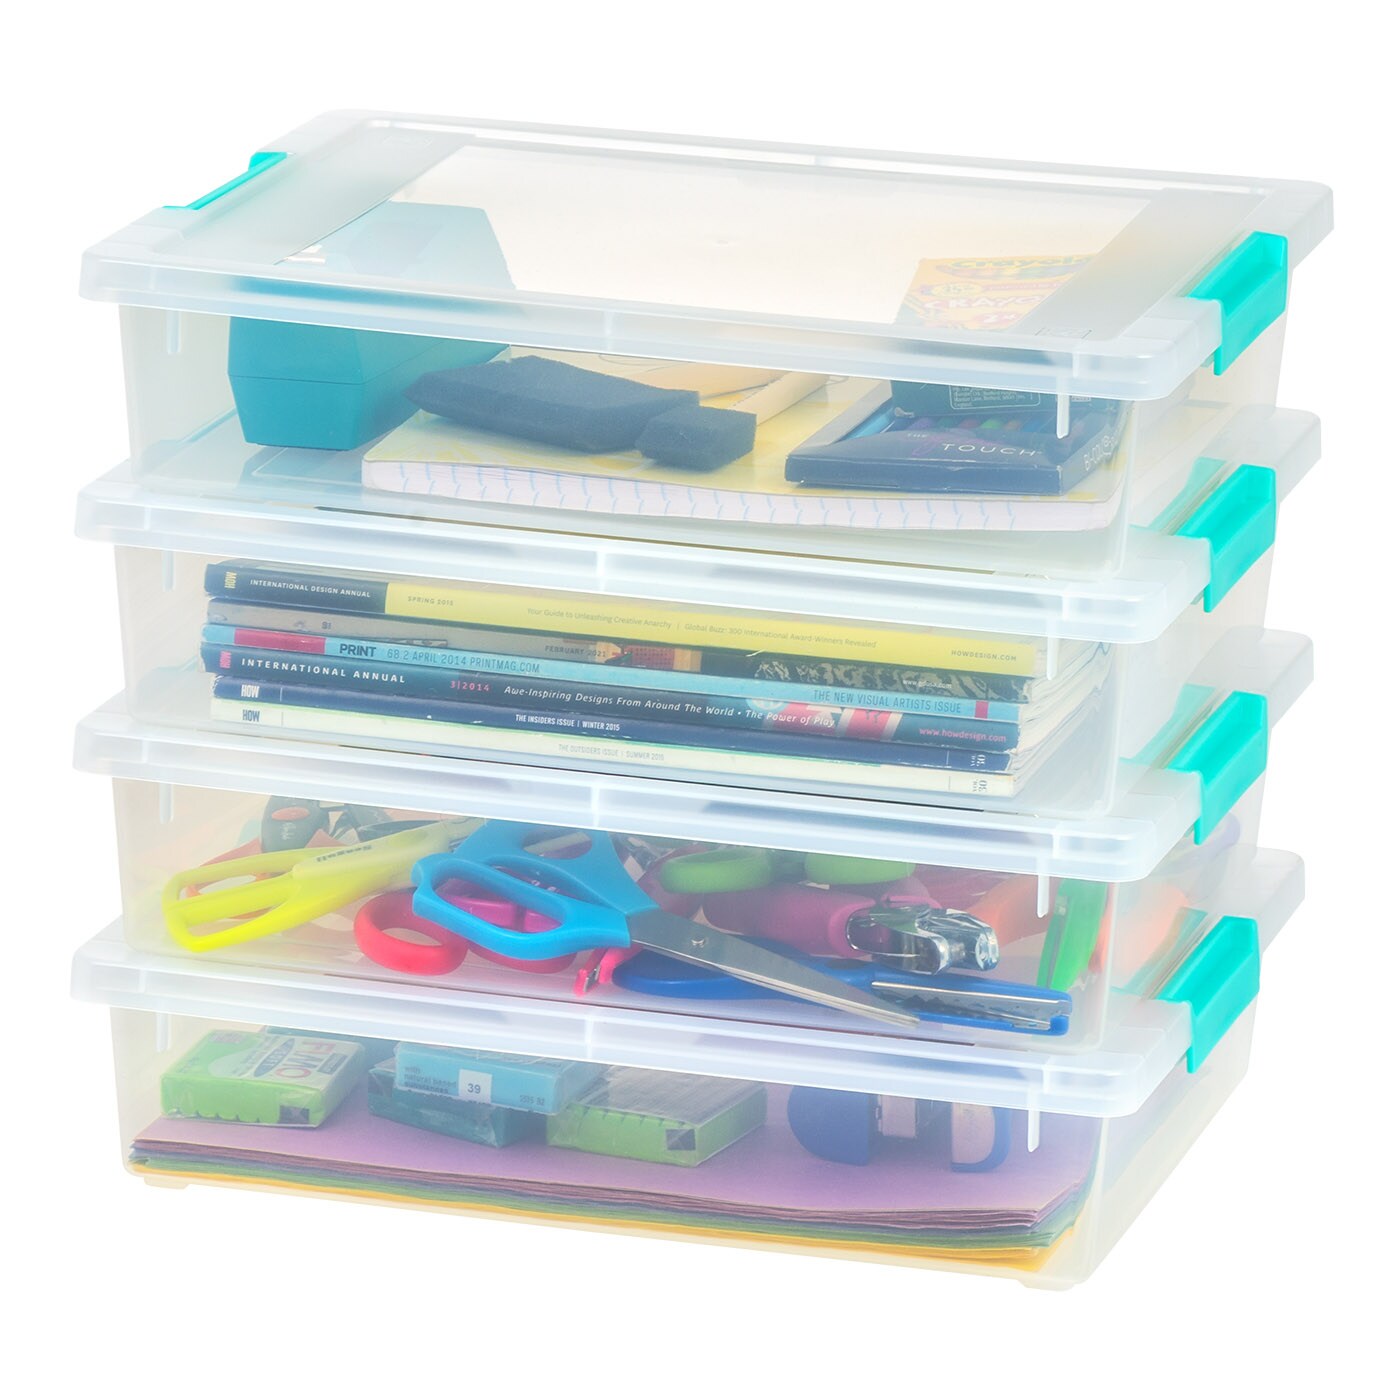 8.5 x 11 Storage Case by Simply Tidy™